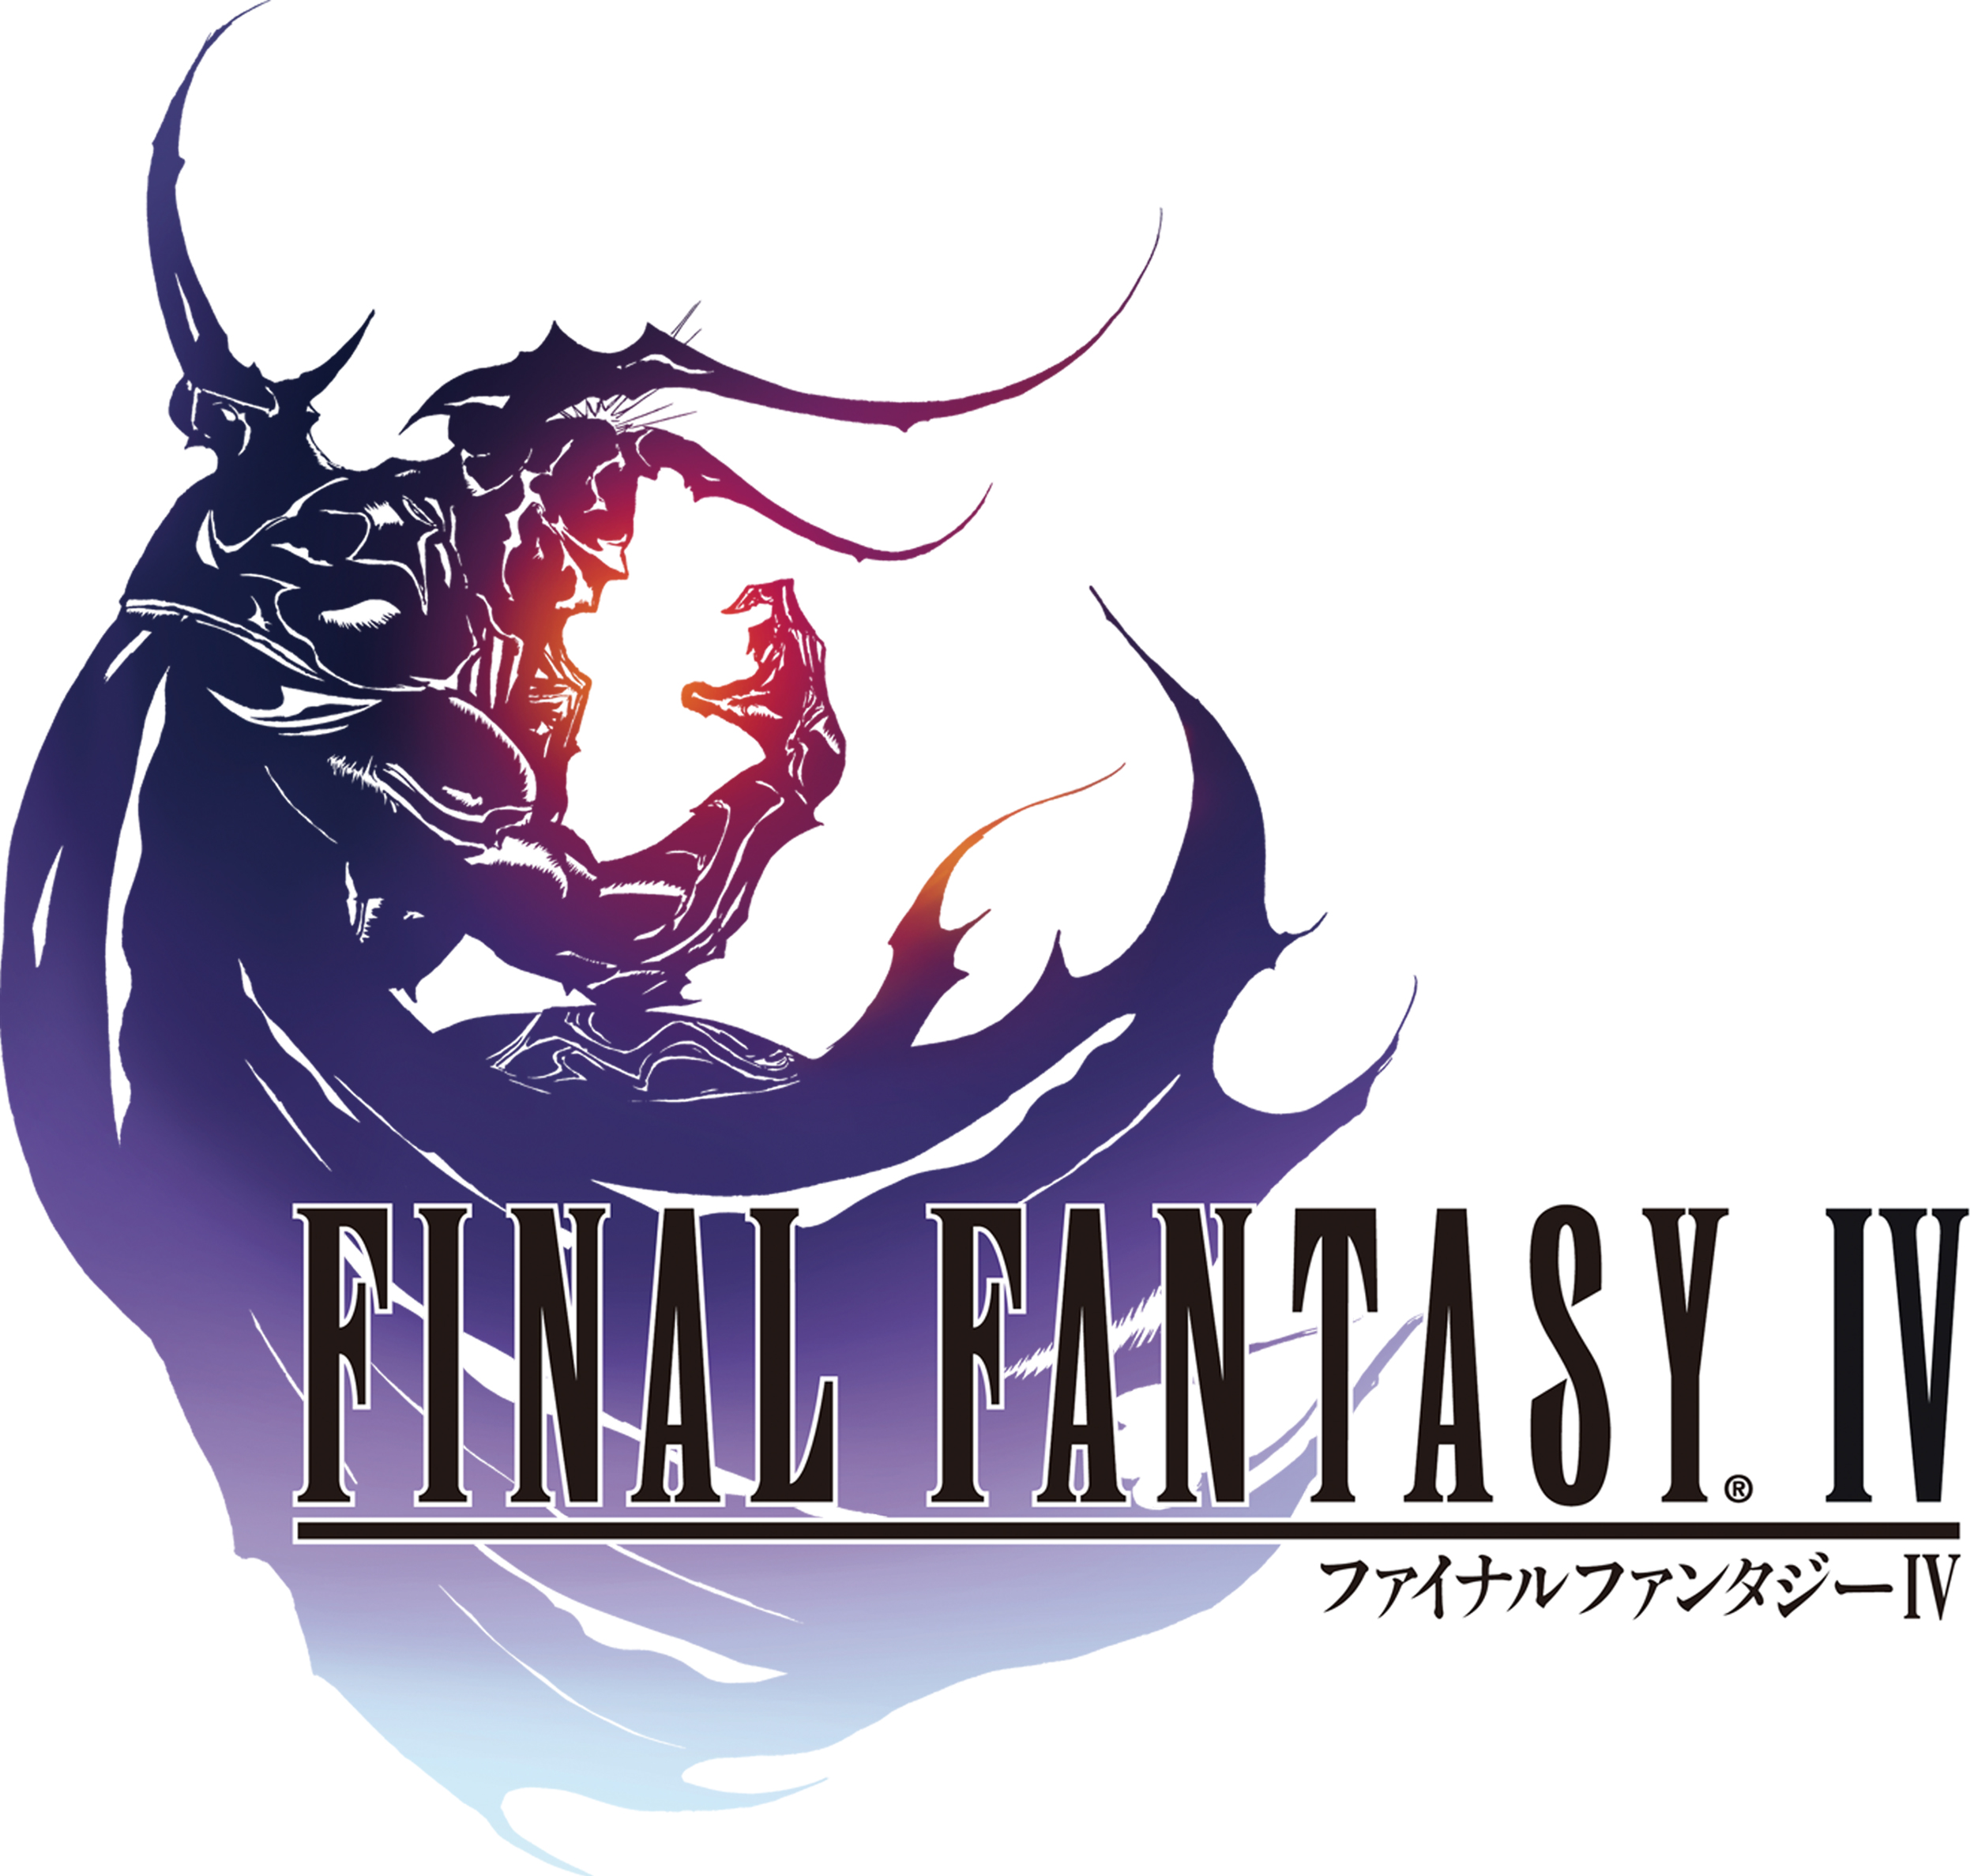 Final Fantasy IV. Final fantasy logo, Final fantasy iv, Final fantasy